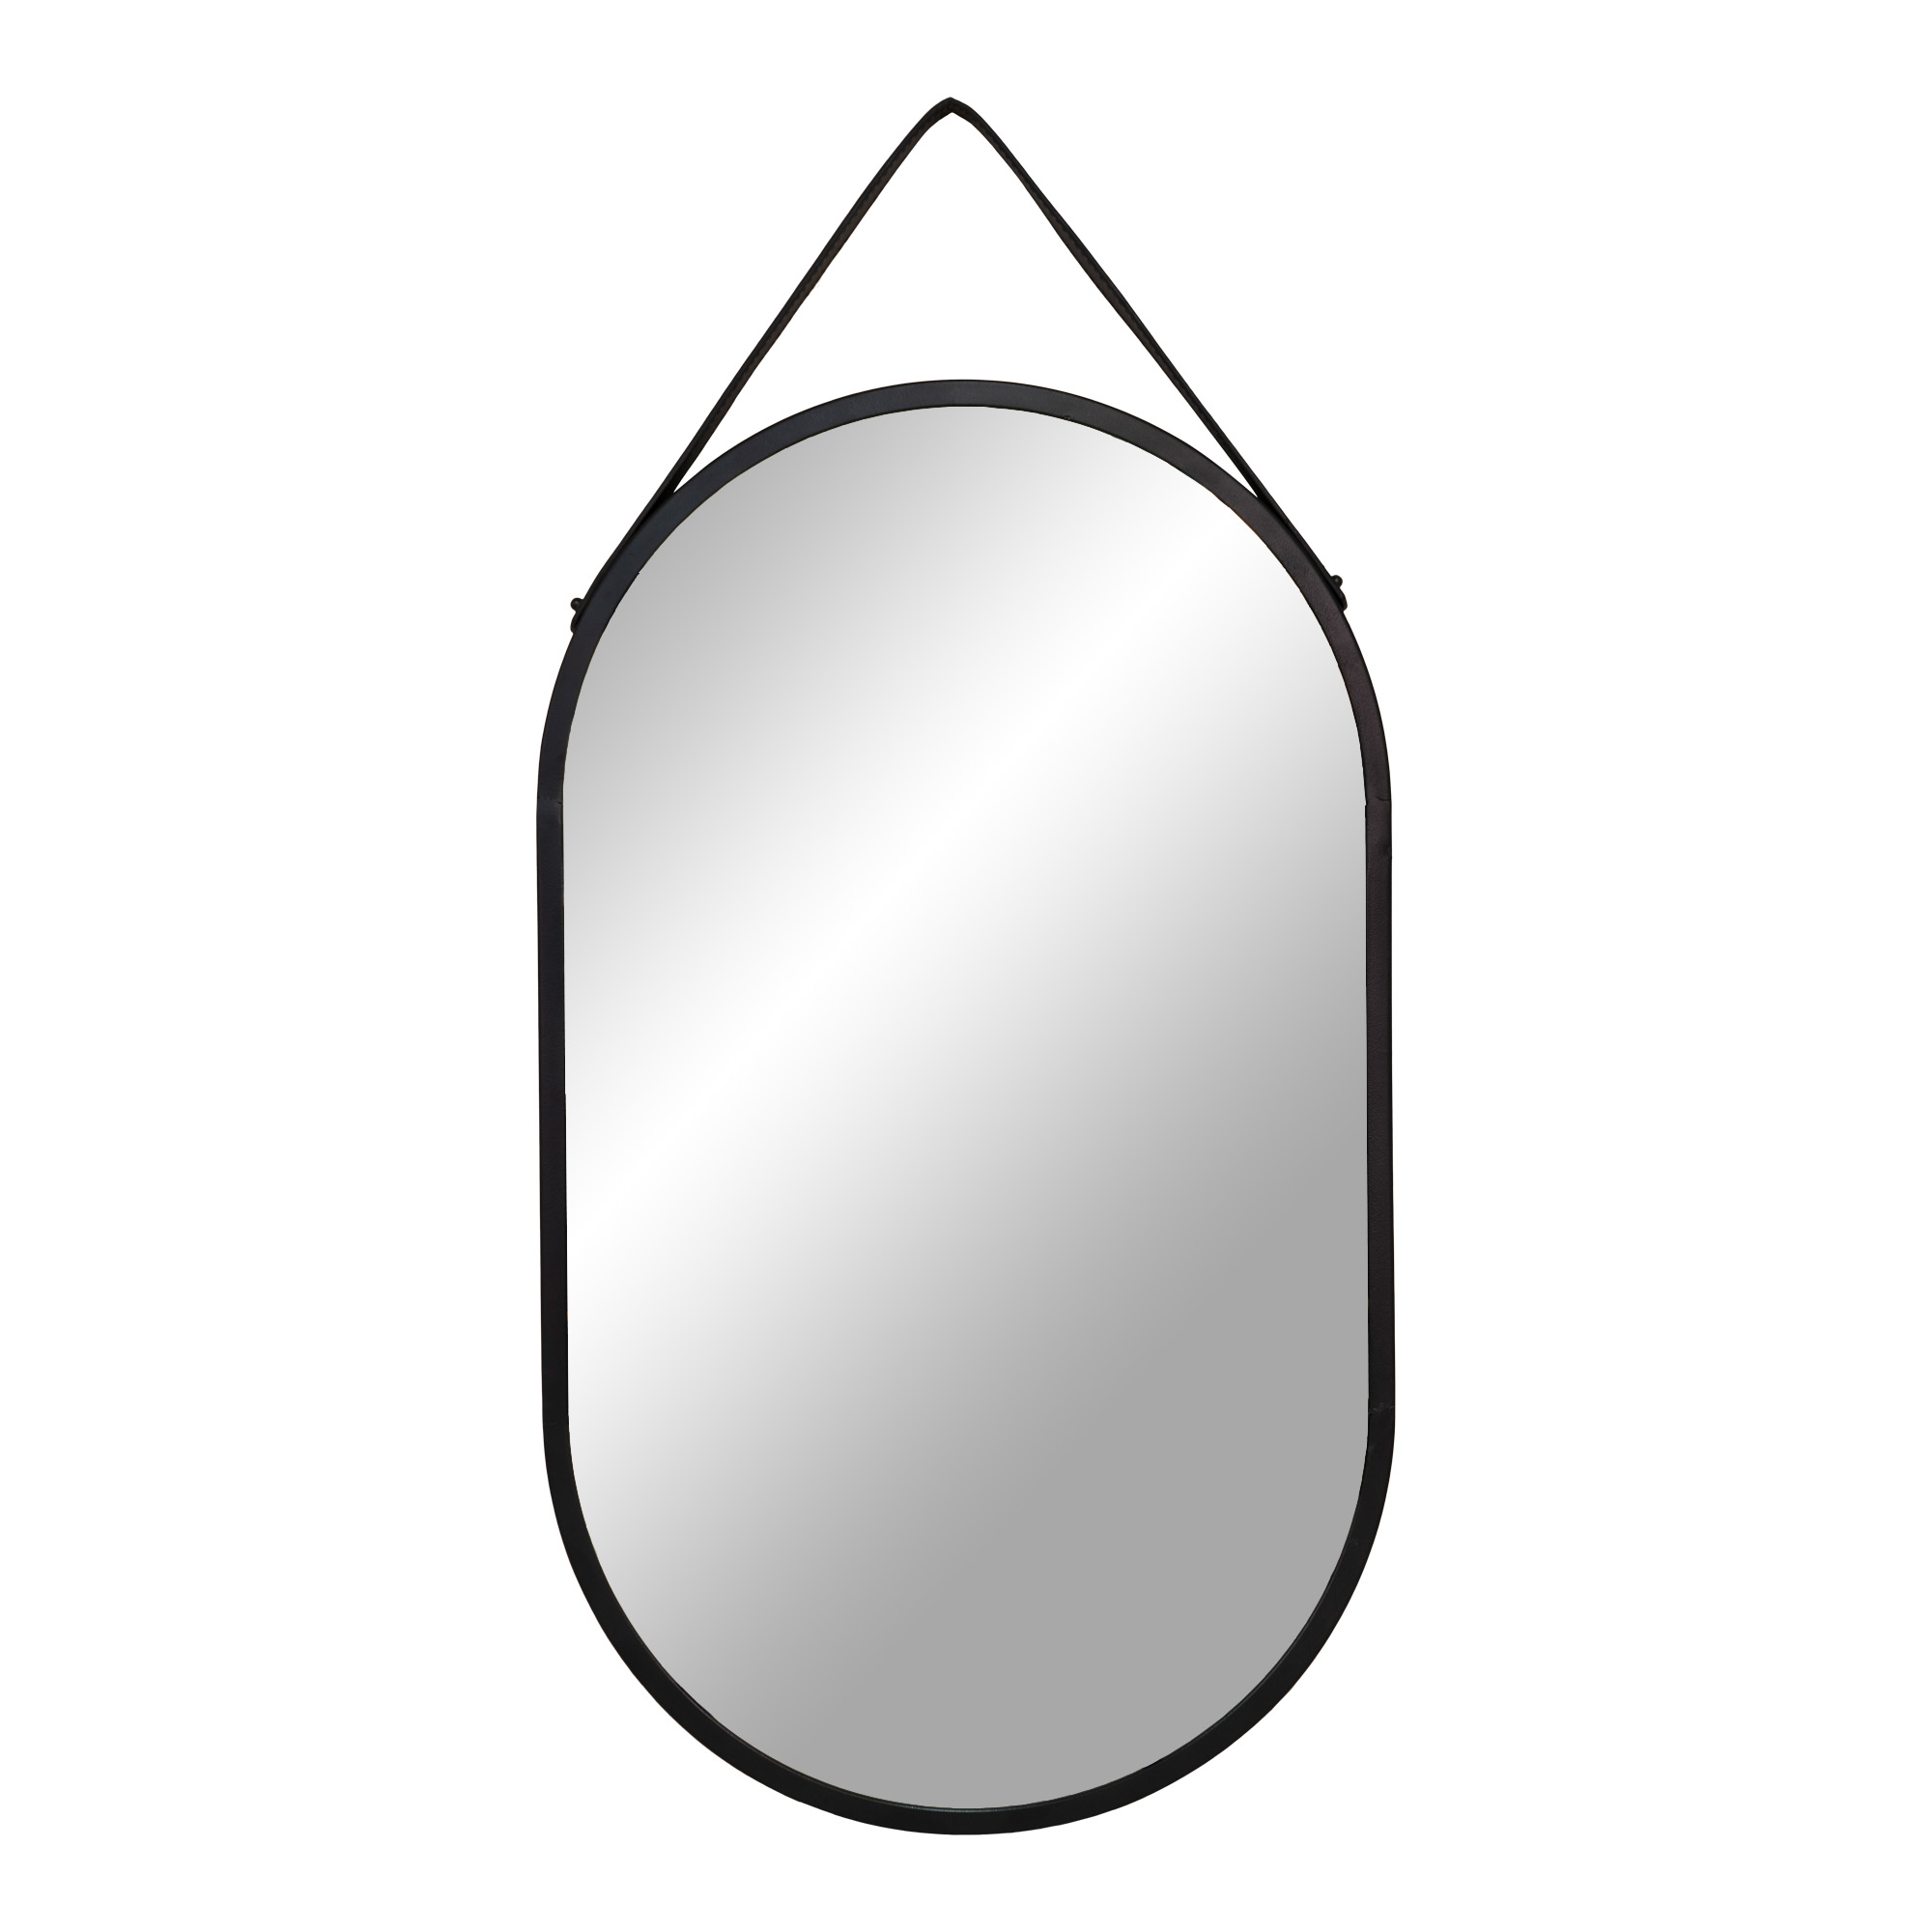 HOUSE NORDIC Trapani vægspejl, m. PU strop, oval - spejlglas og sort stål (60x35)